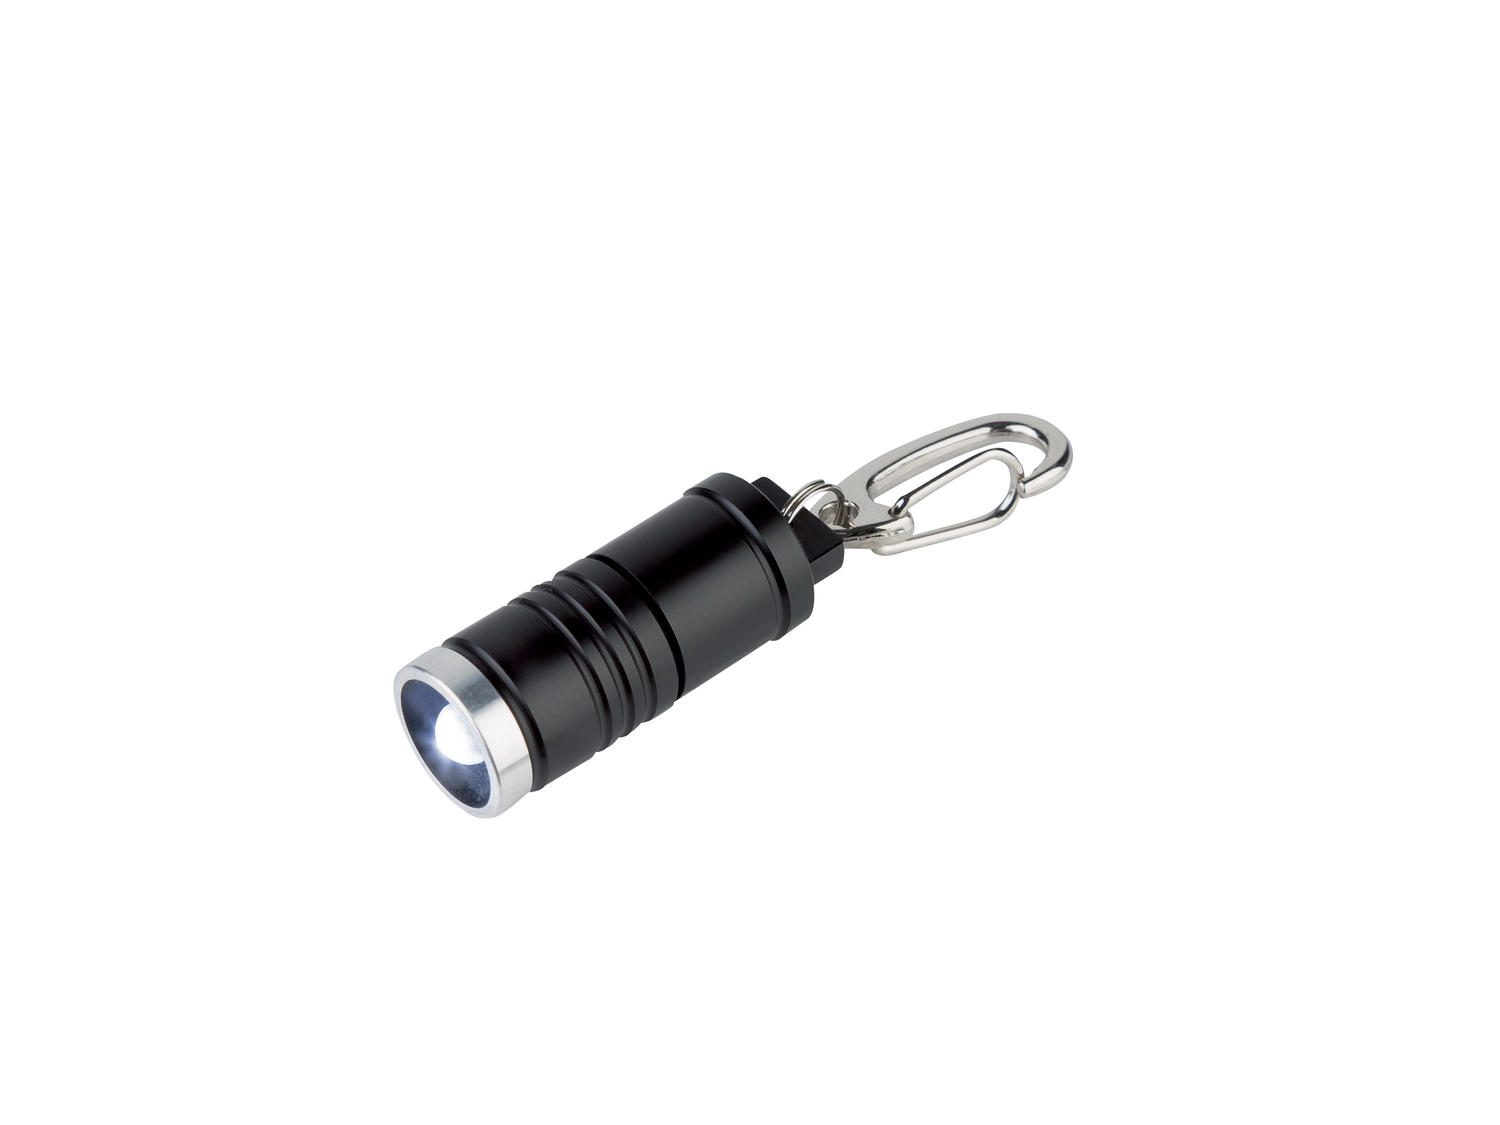 Portachiavi con LED Livarno Lux, prezzo 1.99 € 
2 pezzi 
- Corpo in alluminio ...